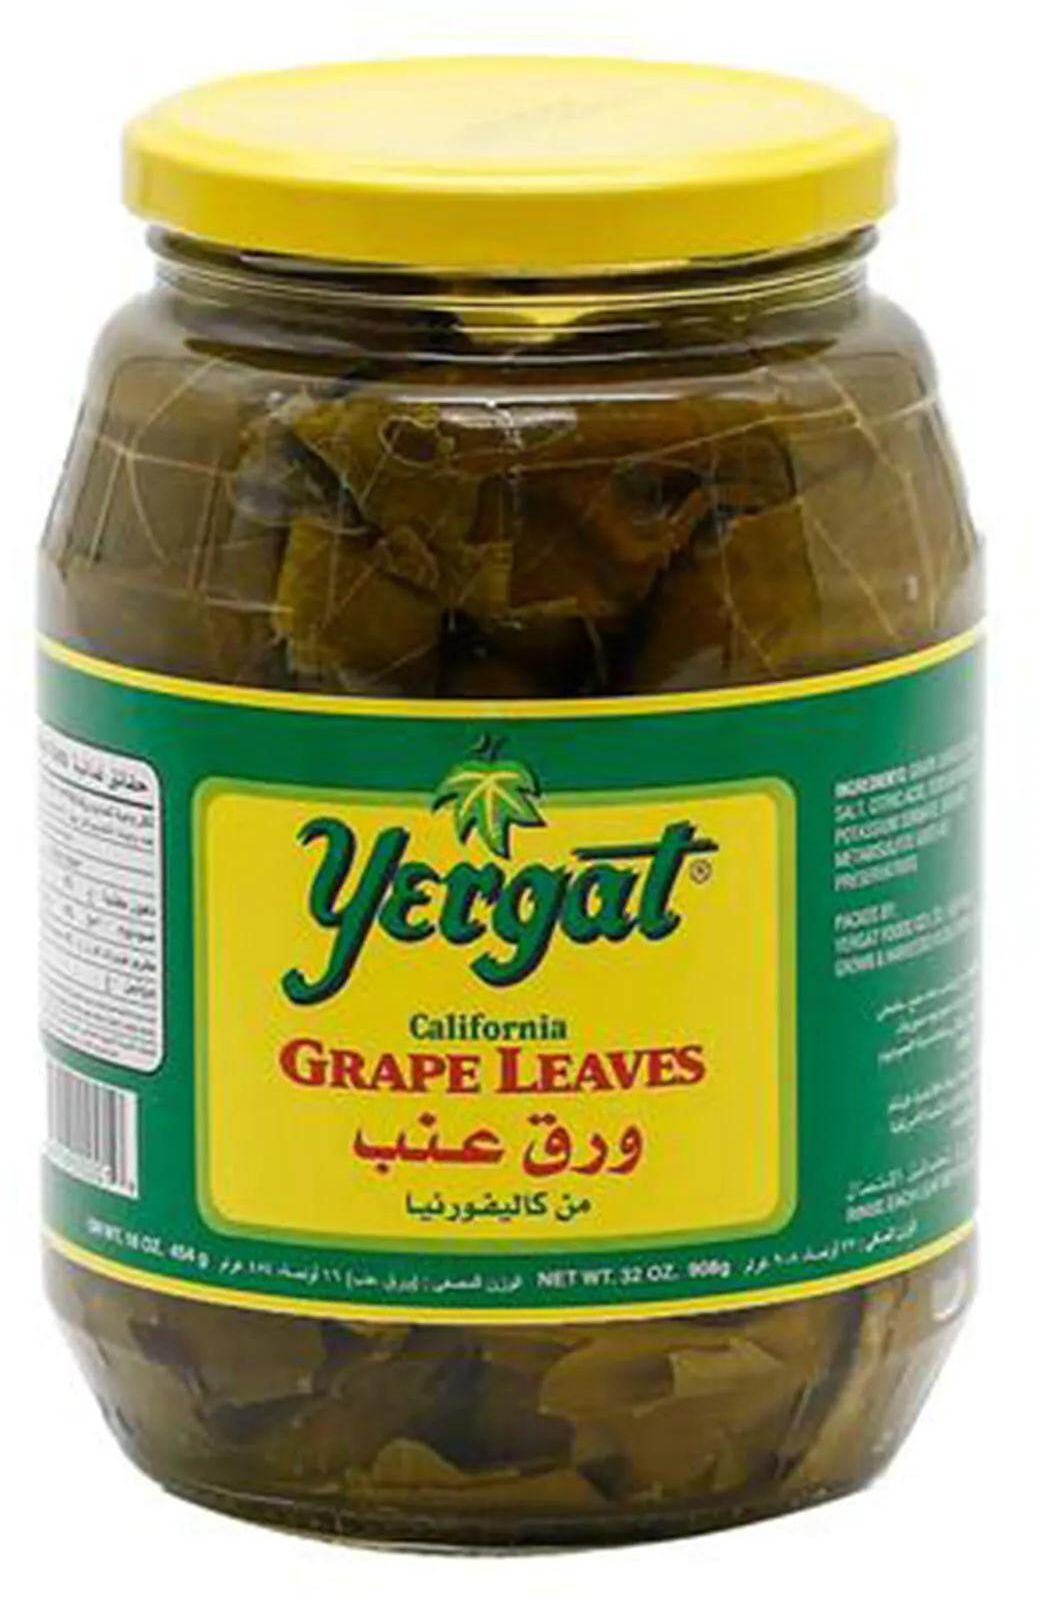 Yergat grape leaves 908 g